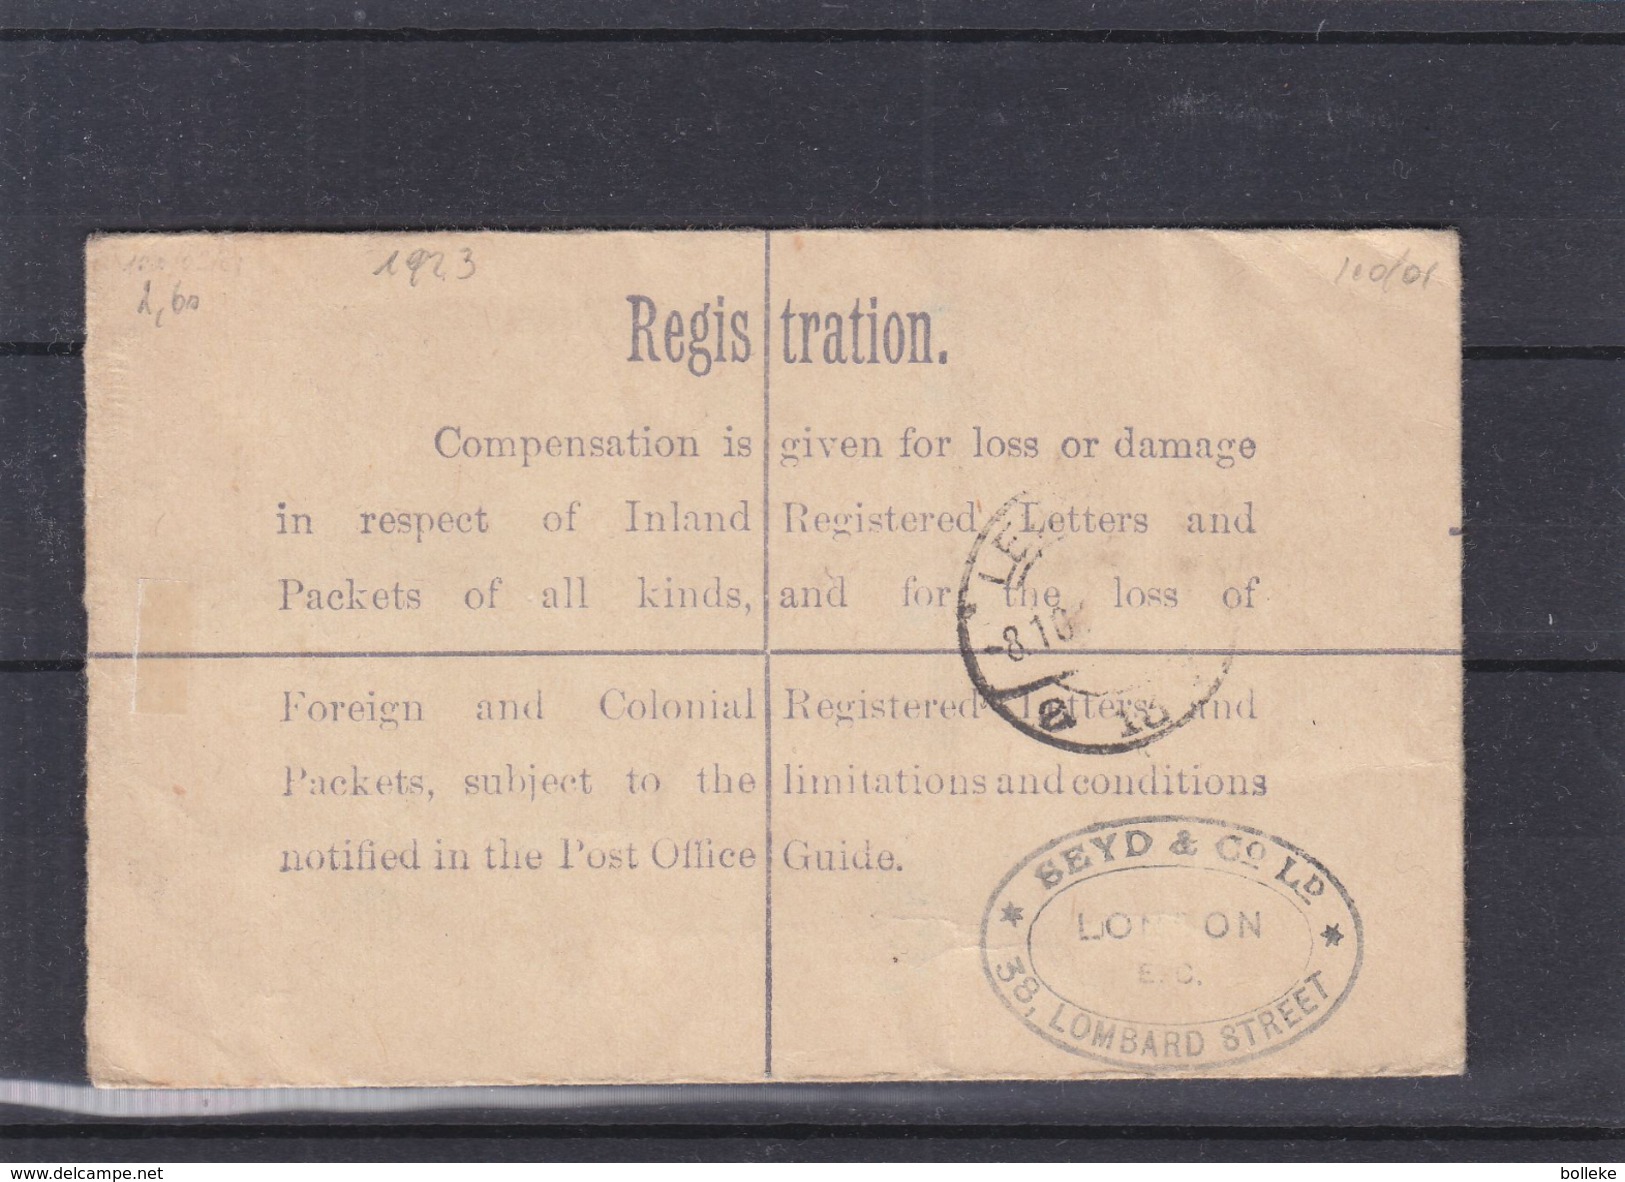 Grande Bretagne - Lettre Recommandée De 1923 - Oblit Gracechuroh St London - Expédié Vers Leipzig - Lettres & Documents